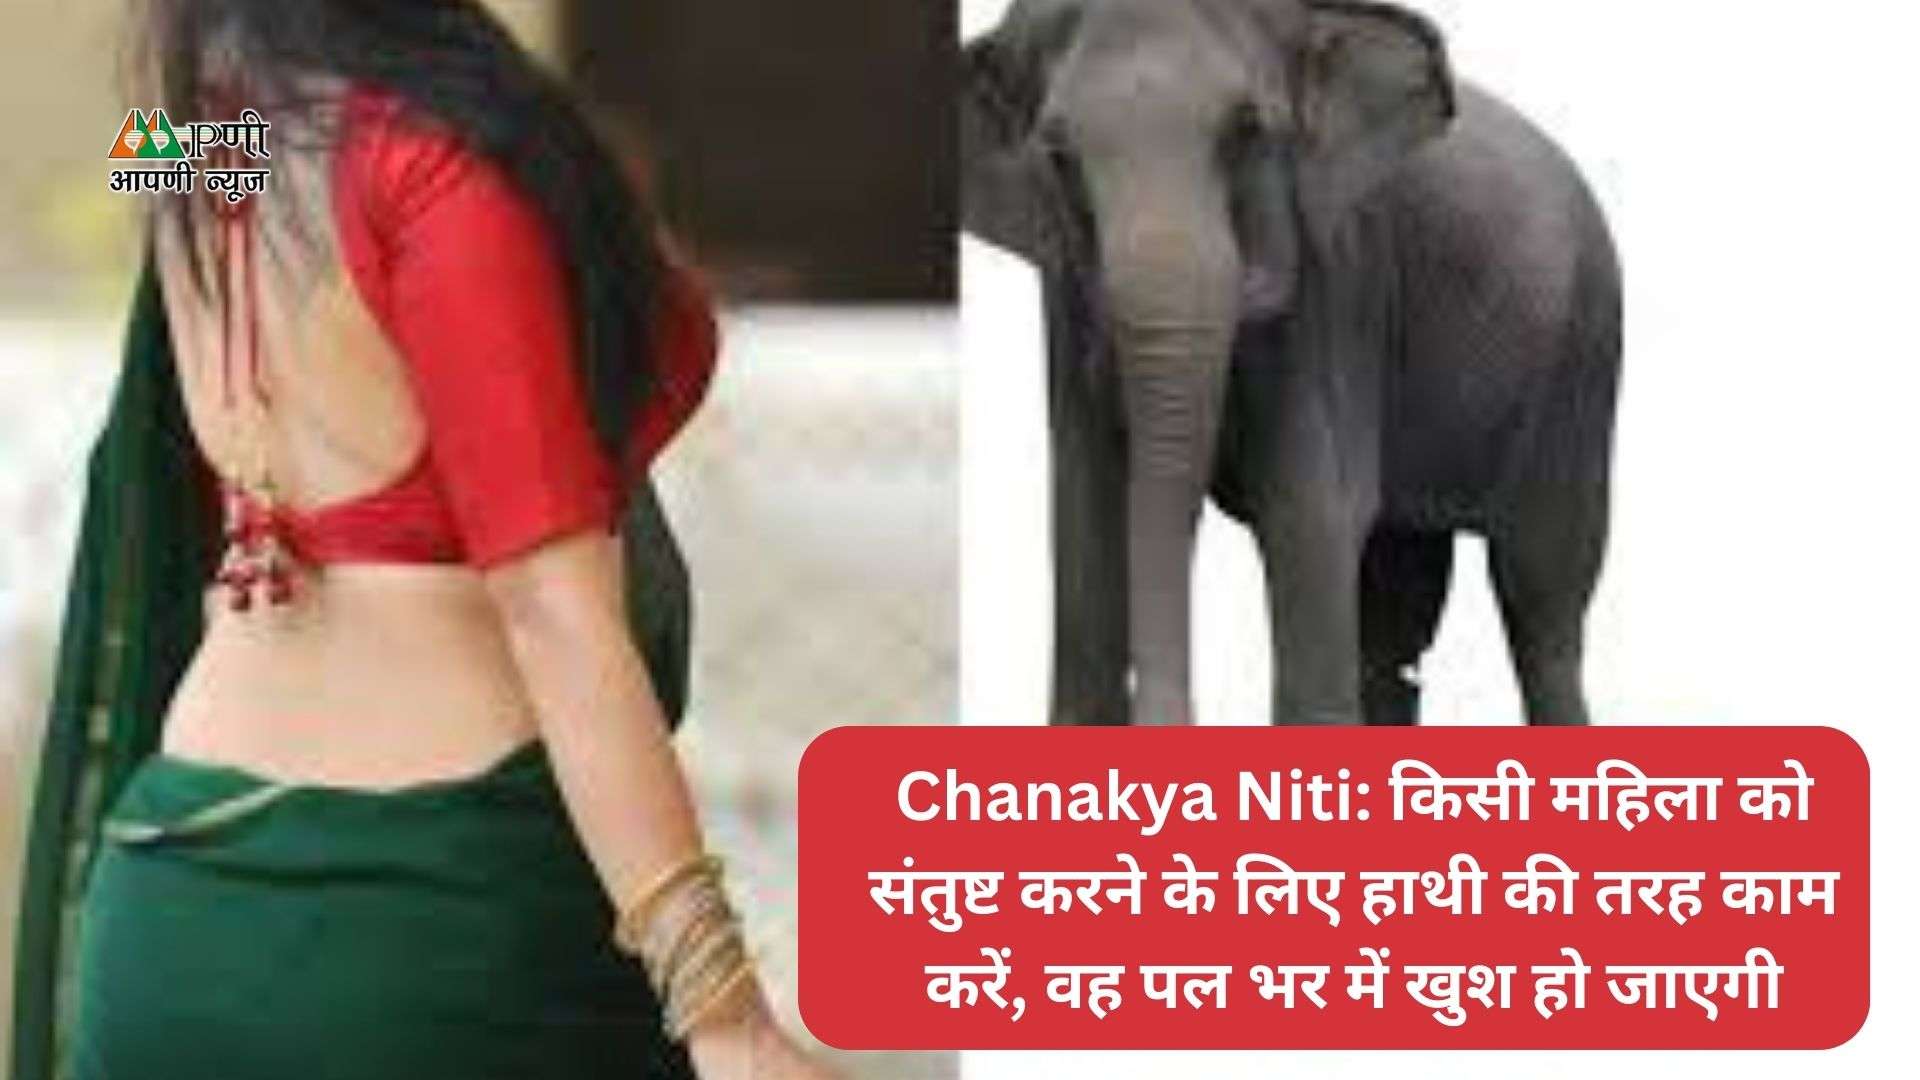 Chanakya Niti: किसी महिला को संतुष्ट करने के लिए हाथी की तरह काम करें, वह पल भर में खुश हो जाएगी